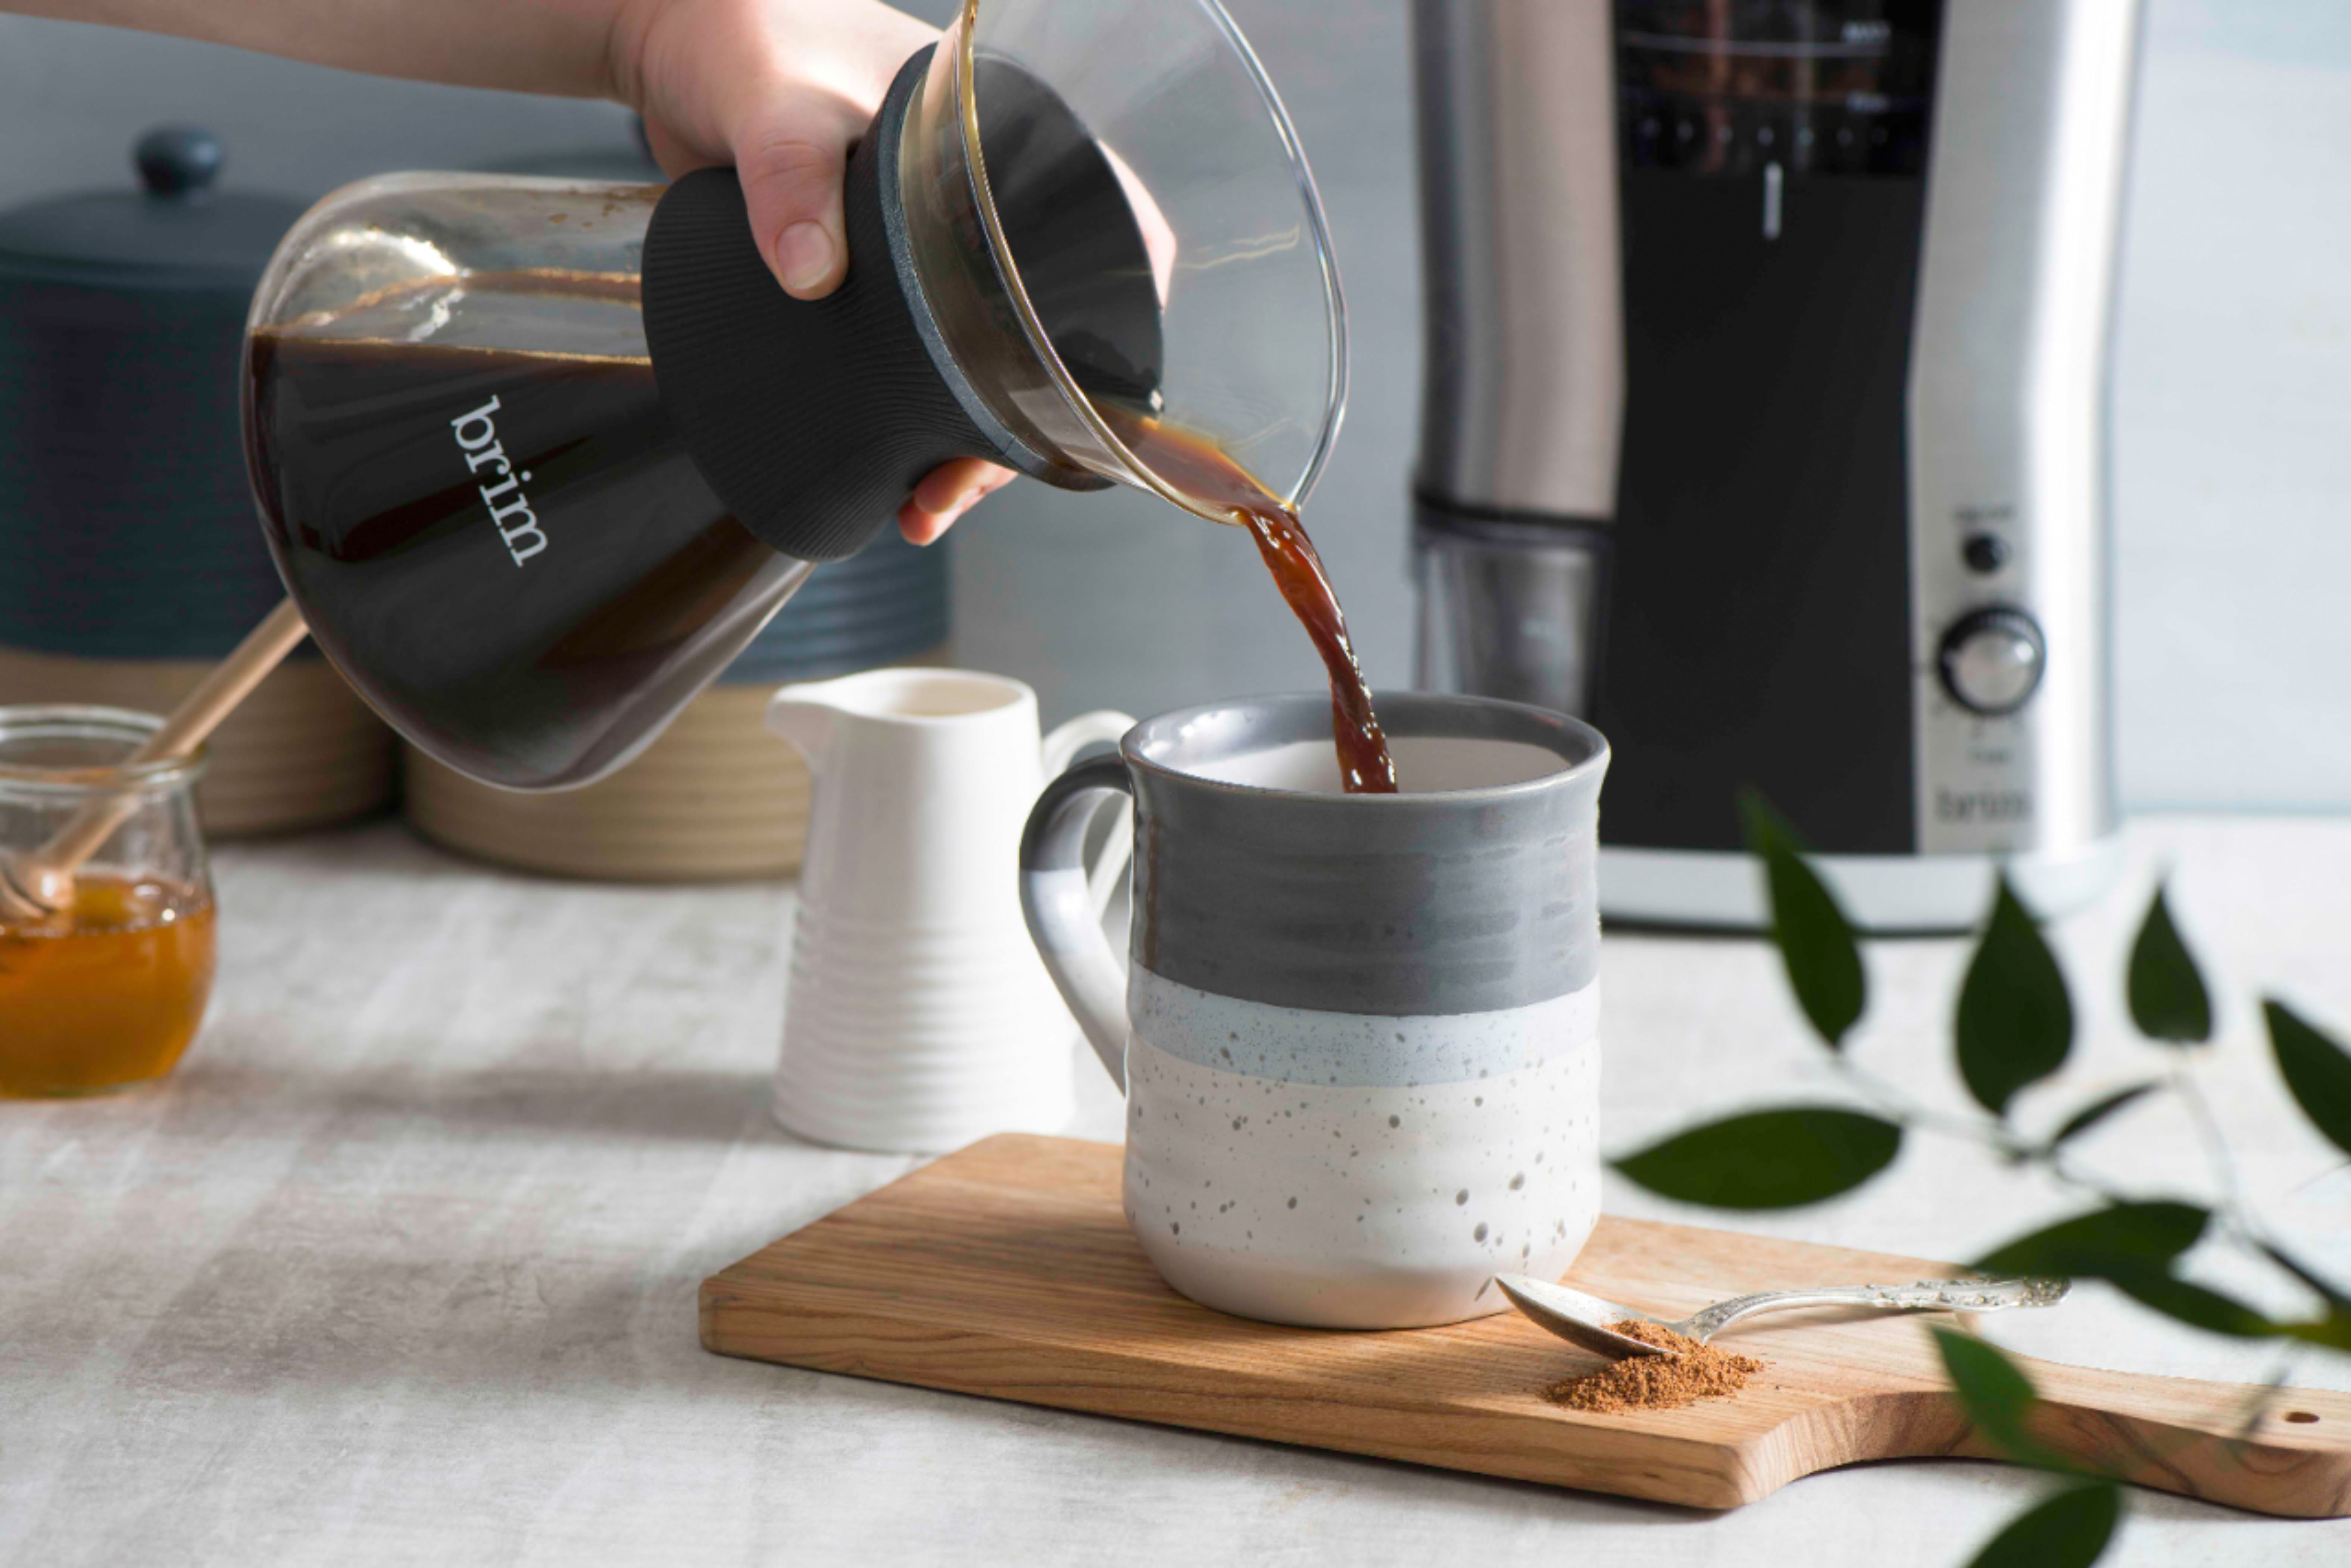 8 Cup Pour Over Coffee Maker, Satin Copper - BRIM